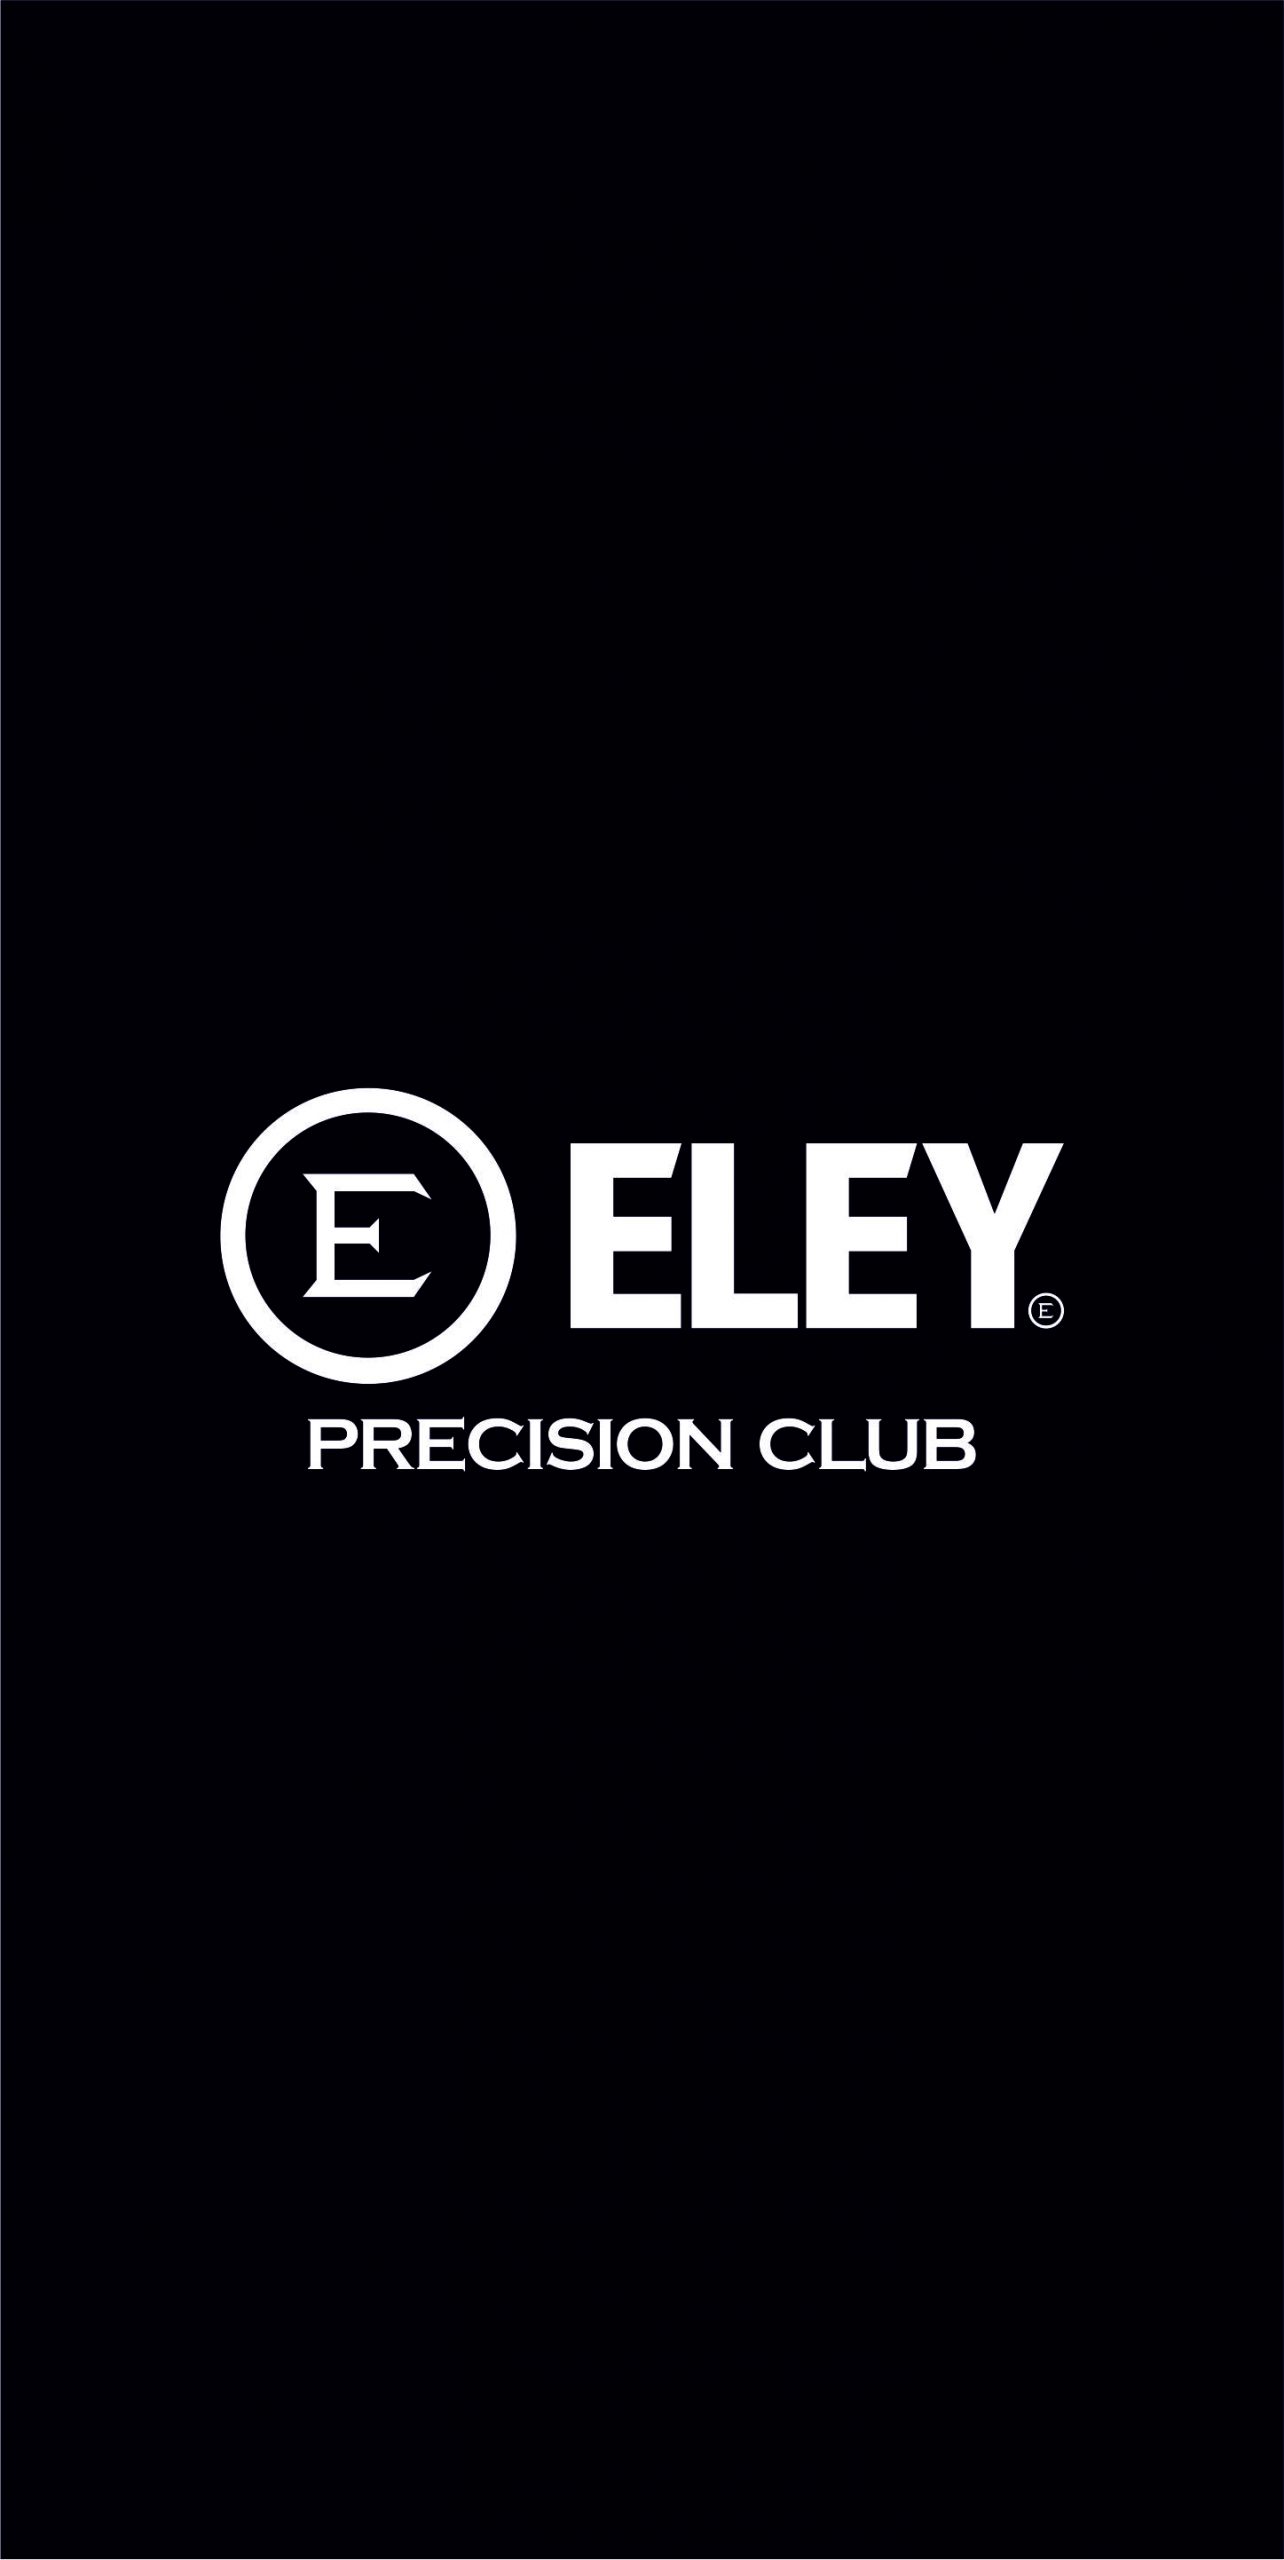 ELEY precision club